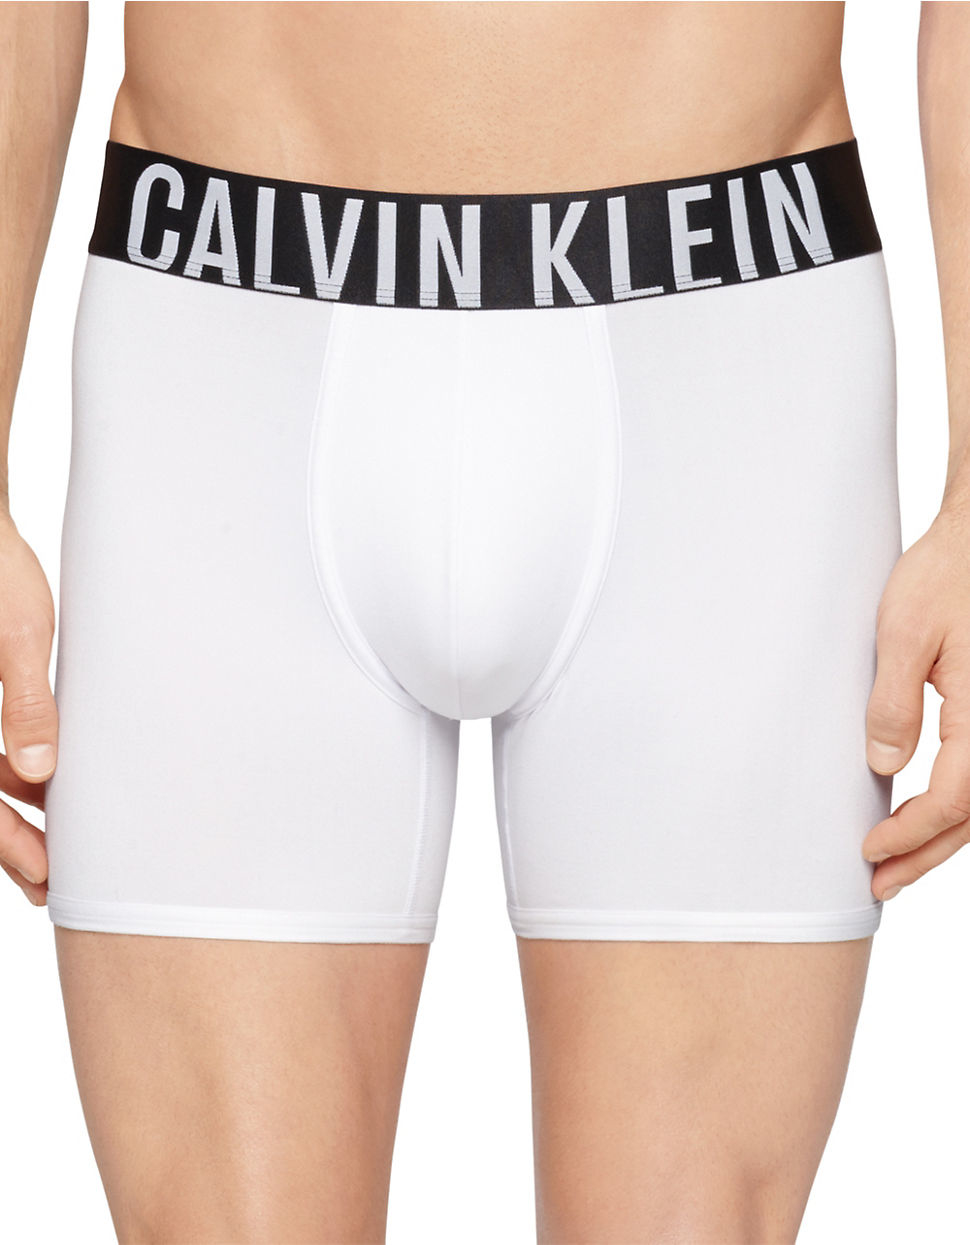 Lyst - Calvin Klein Intense Power Boxer Briefs in White for Men